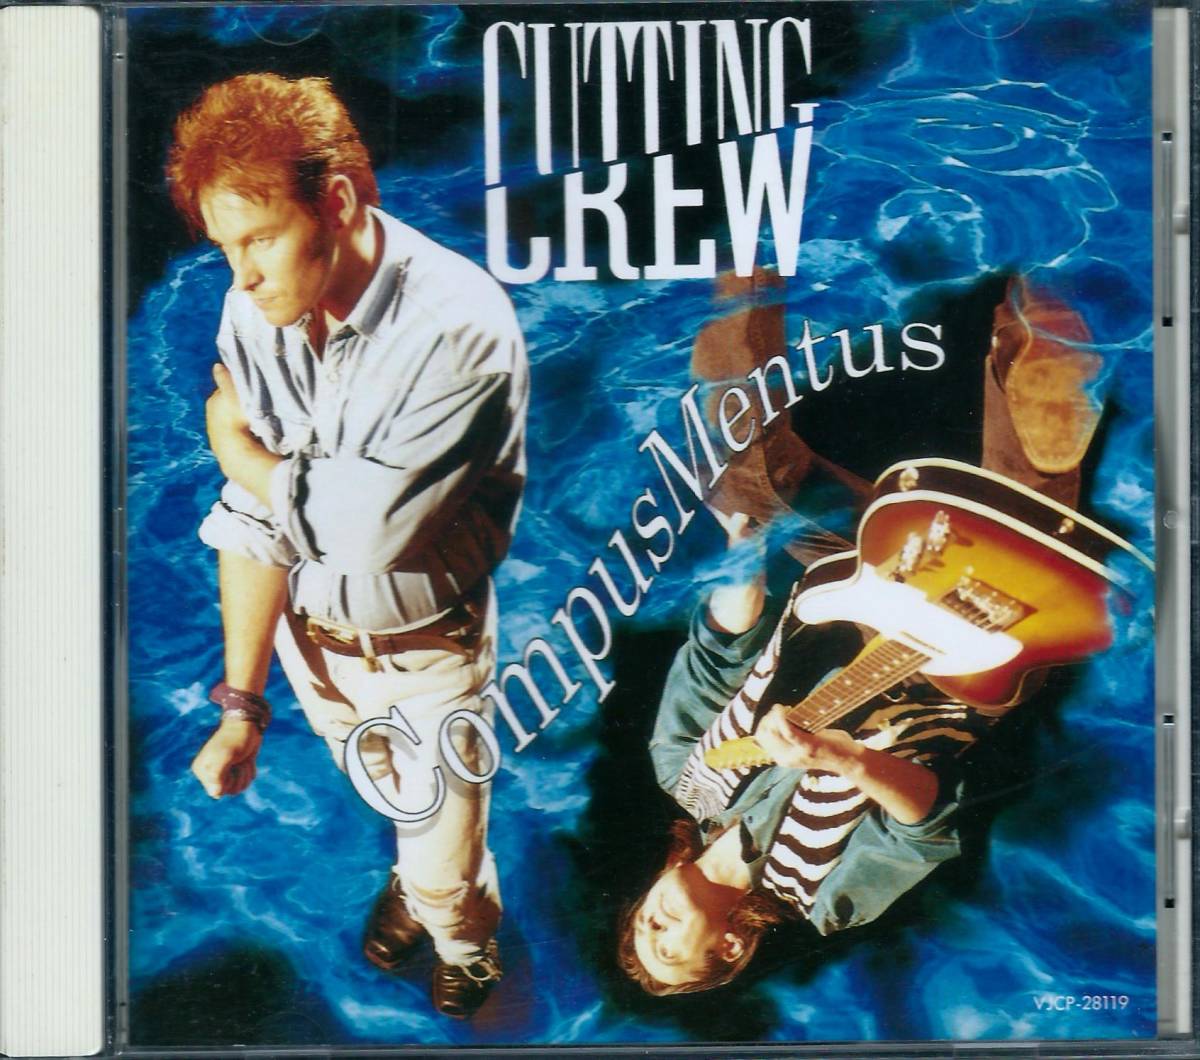 CUTTING CREW / Compus Mentus VJCP-28119 国内盤 CD カッティング・クルー / コンパス・メンタス 4枚同梱発送可能_画像1